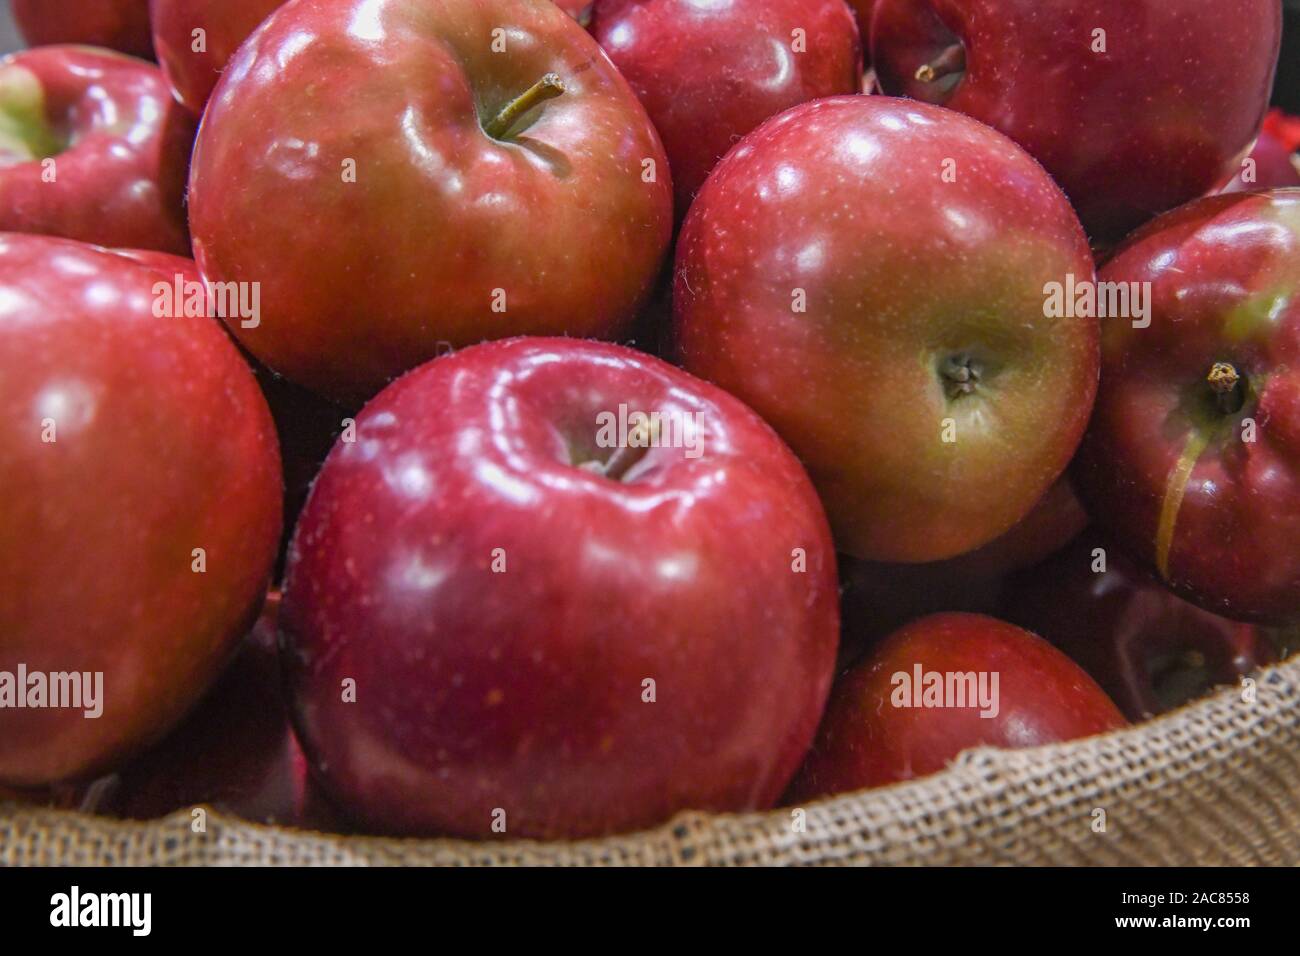 Korb mit Äpfeln Close up - viele rote Äpfel saftiges Obst aka. roten Malus - gesunder Lebensstil Nahrung mit Vitaminen - Polyphenole und Phytochemikalien Stockfoto